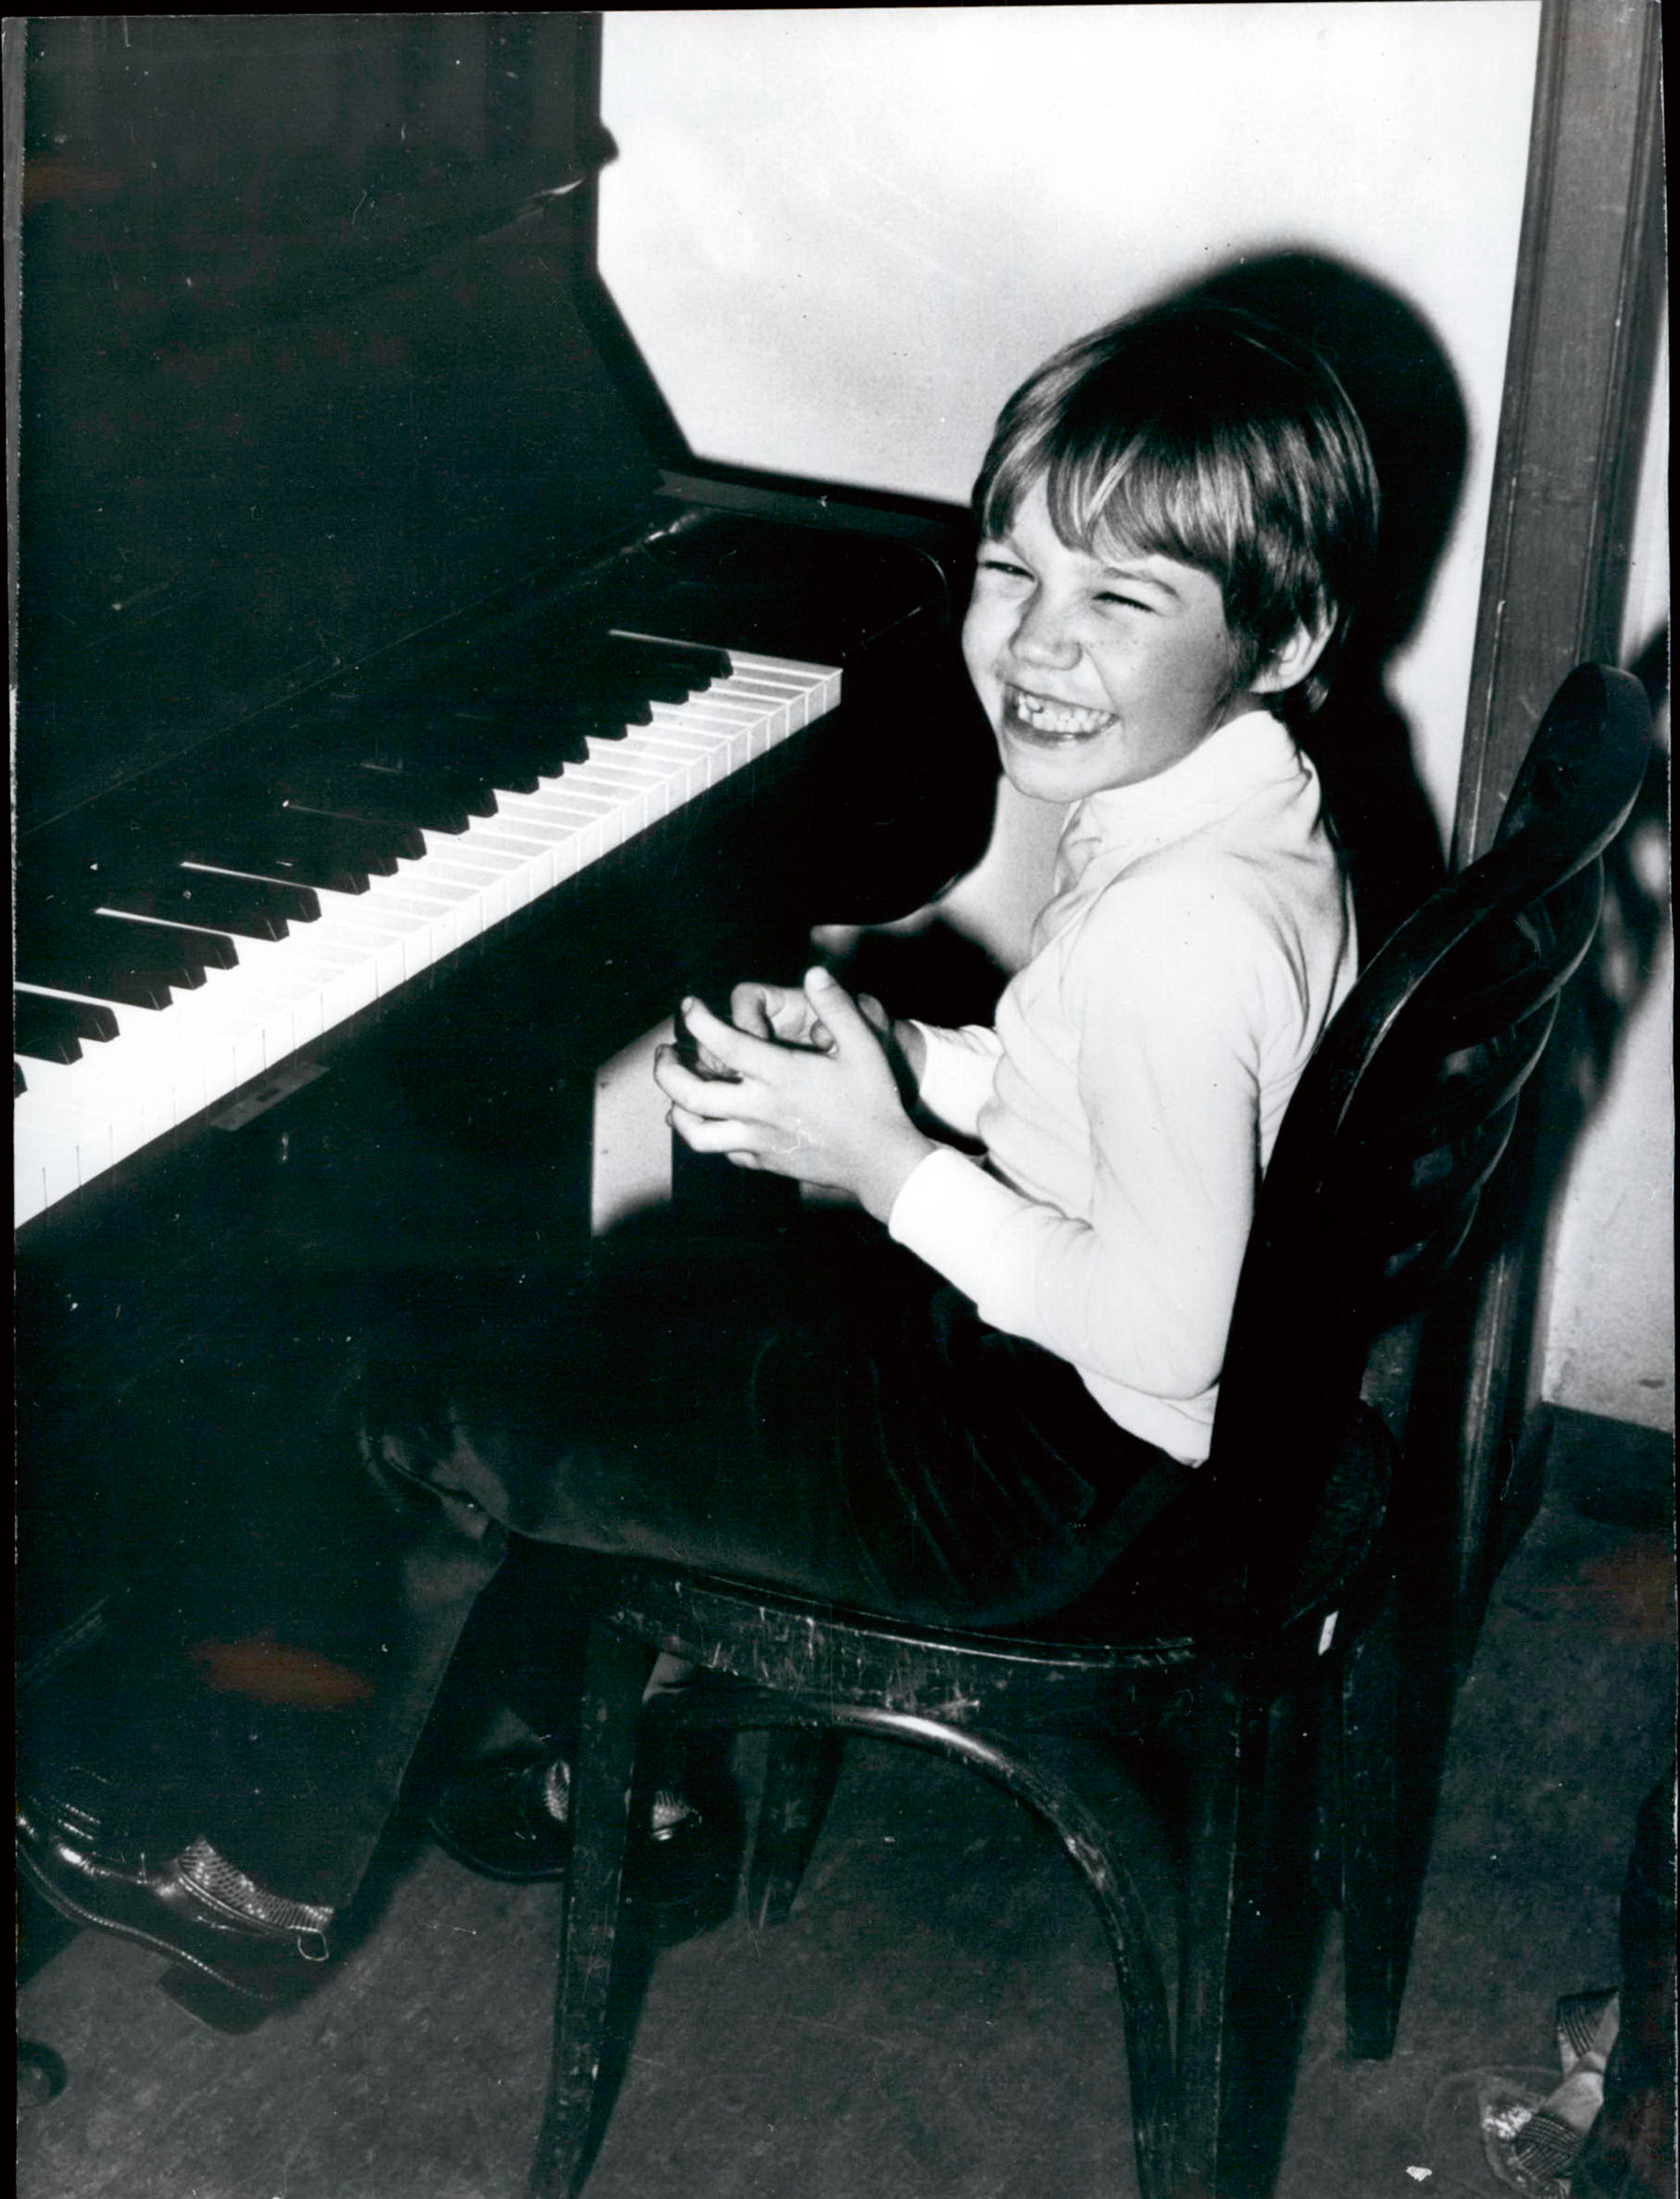 El niño prodigio del piano se rebela a su destino